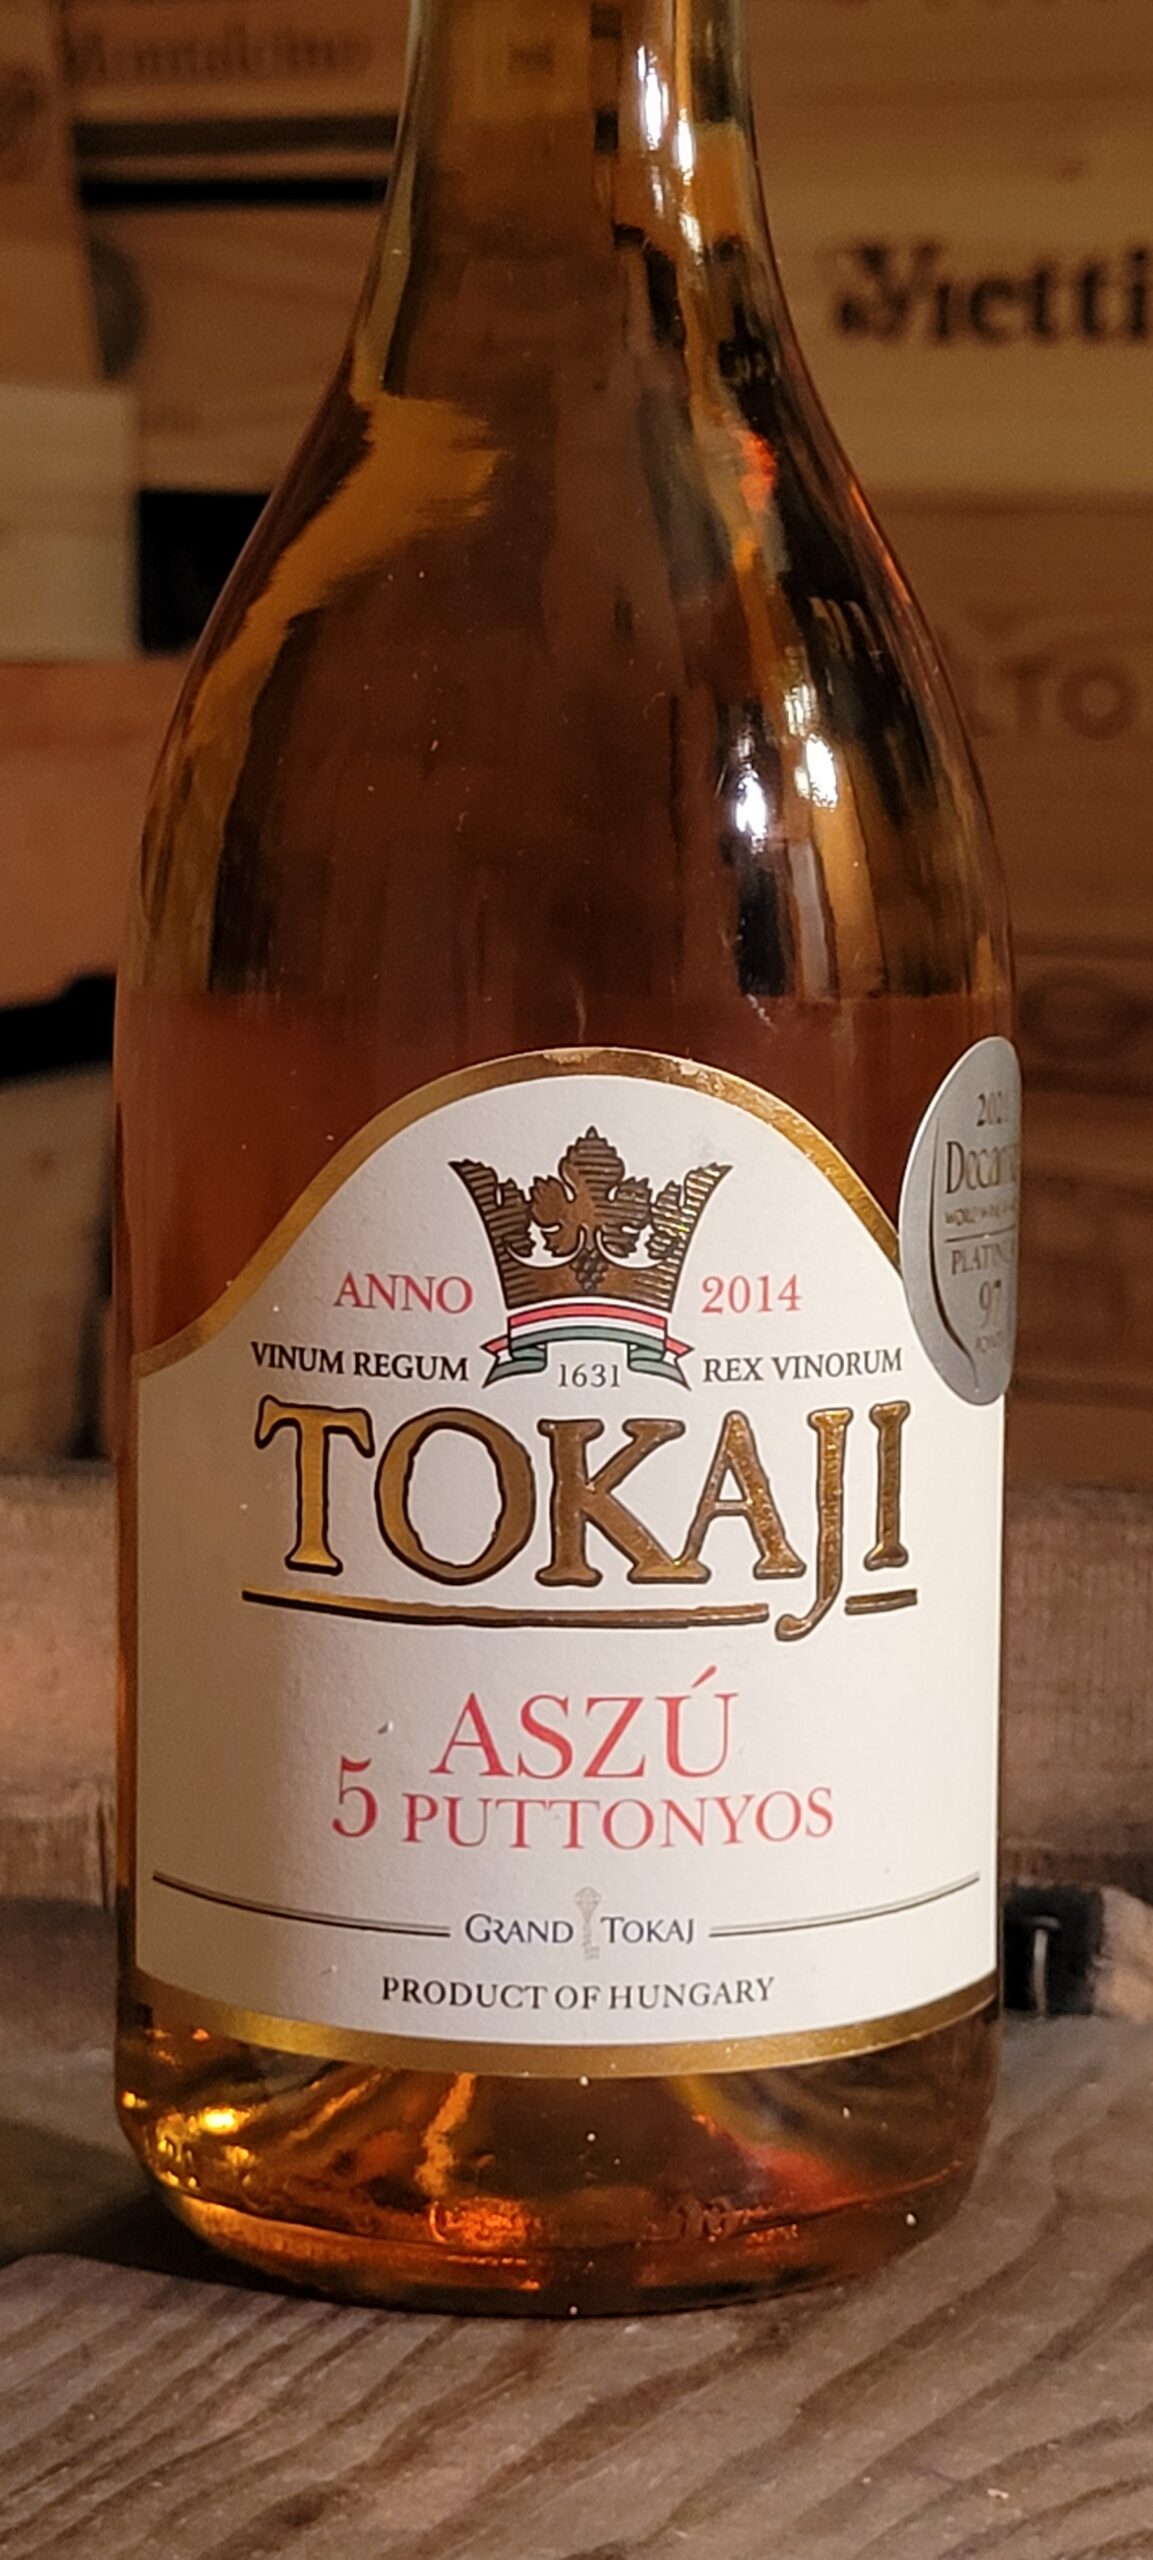 De geschiedenis van de wijnen uit Tokaj